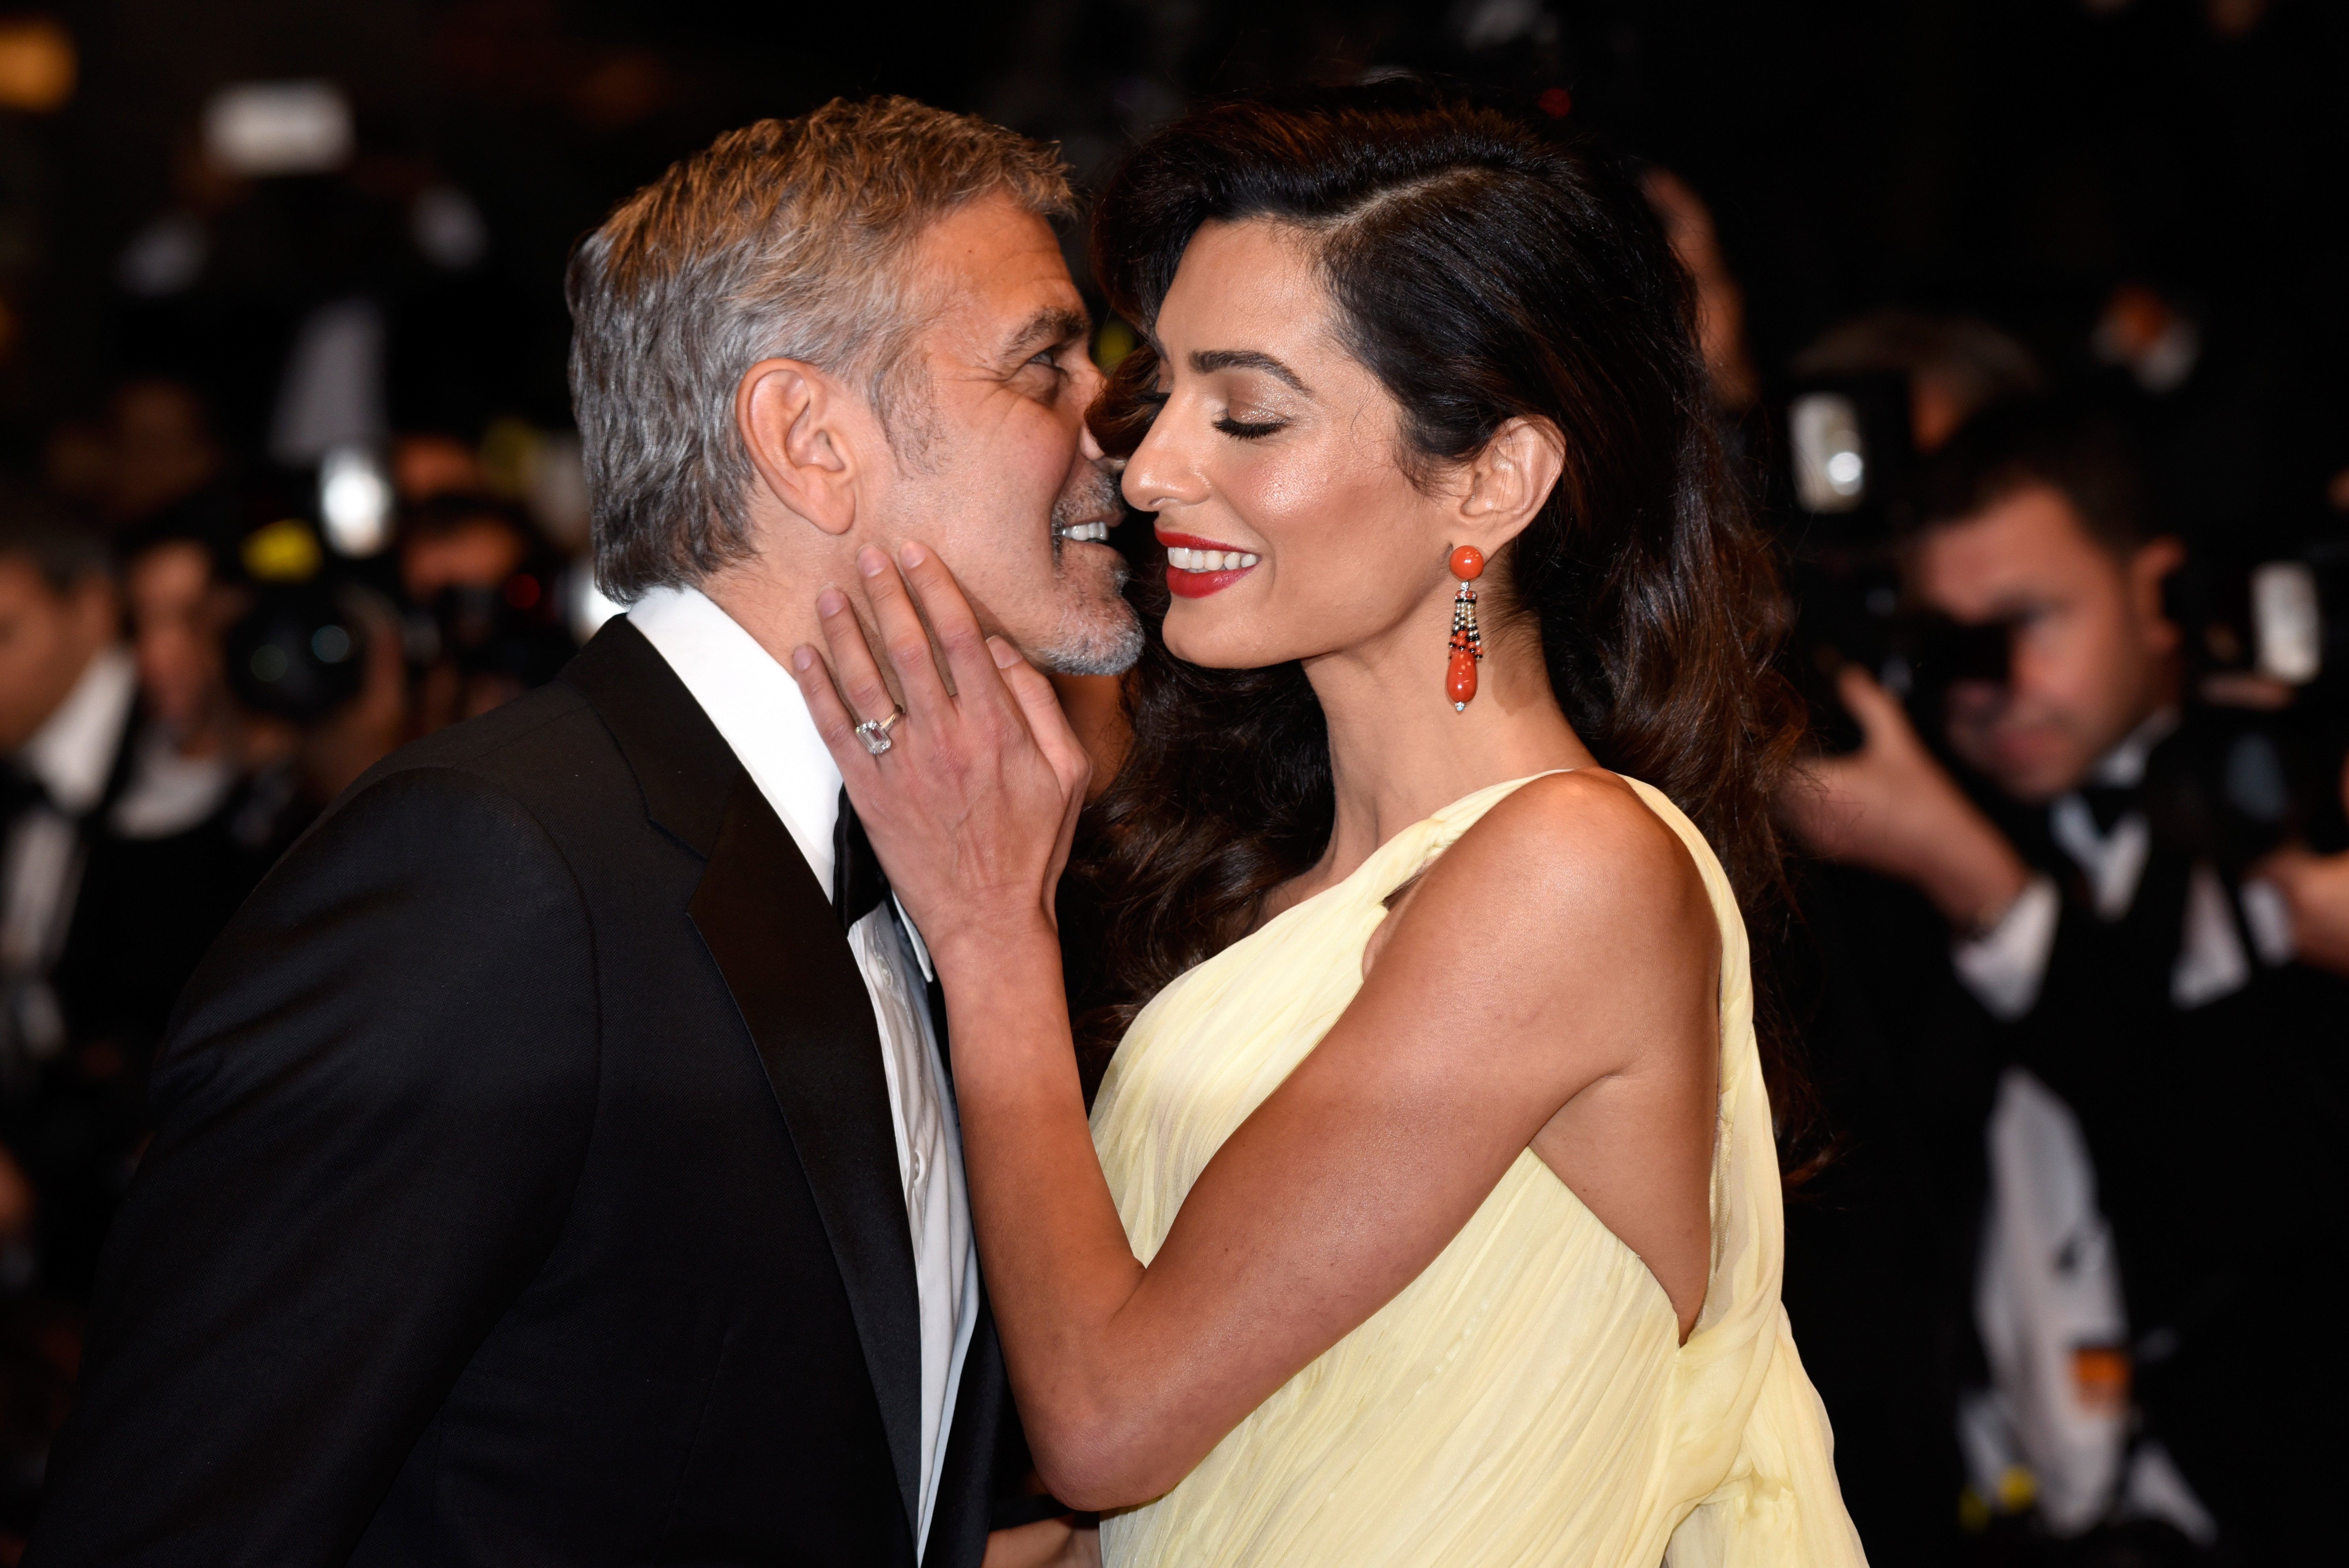 George Clooney und seine Frau Amal Clooney bei der "Money Monster"-Premiere während der 69. jährlichen Filmfestspiele von Cannes im Palais des Festivals am 12. Mai 2016 in Cannes, Frankreich | Quelle: Getty Images